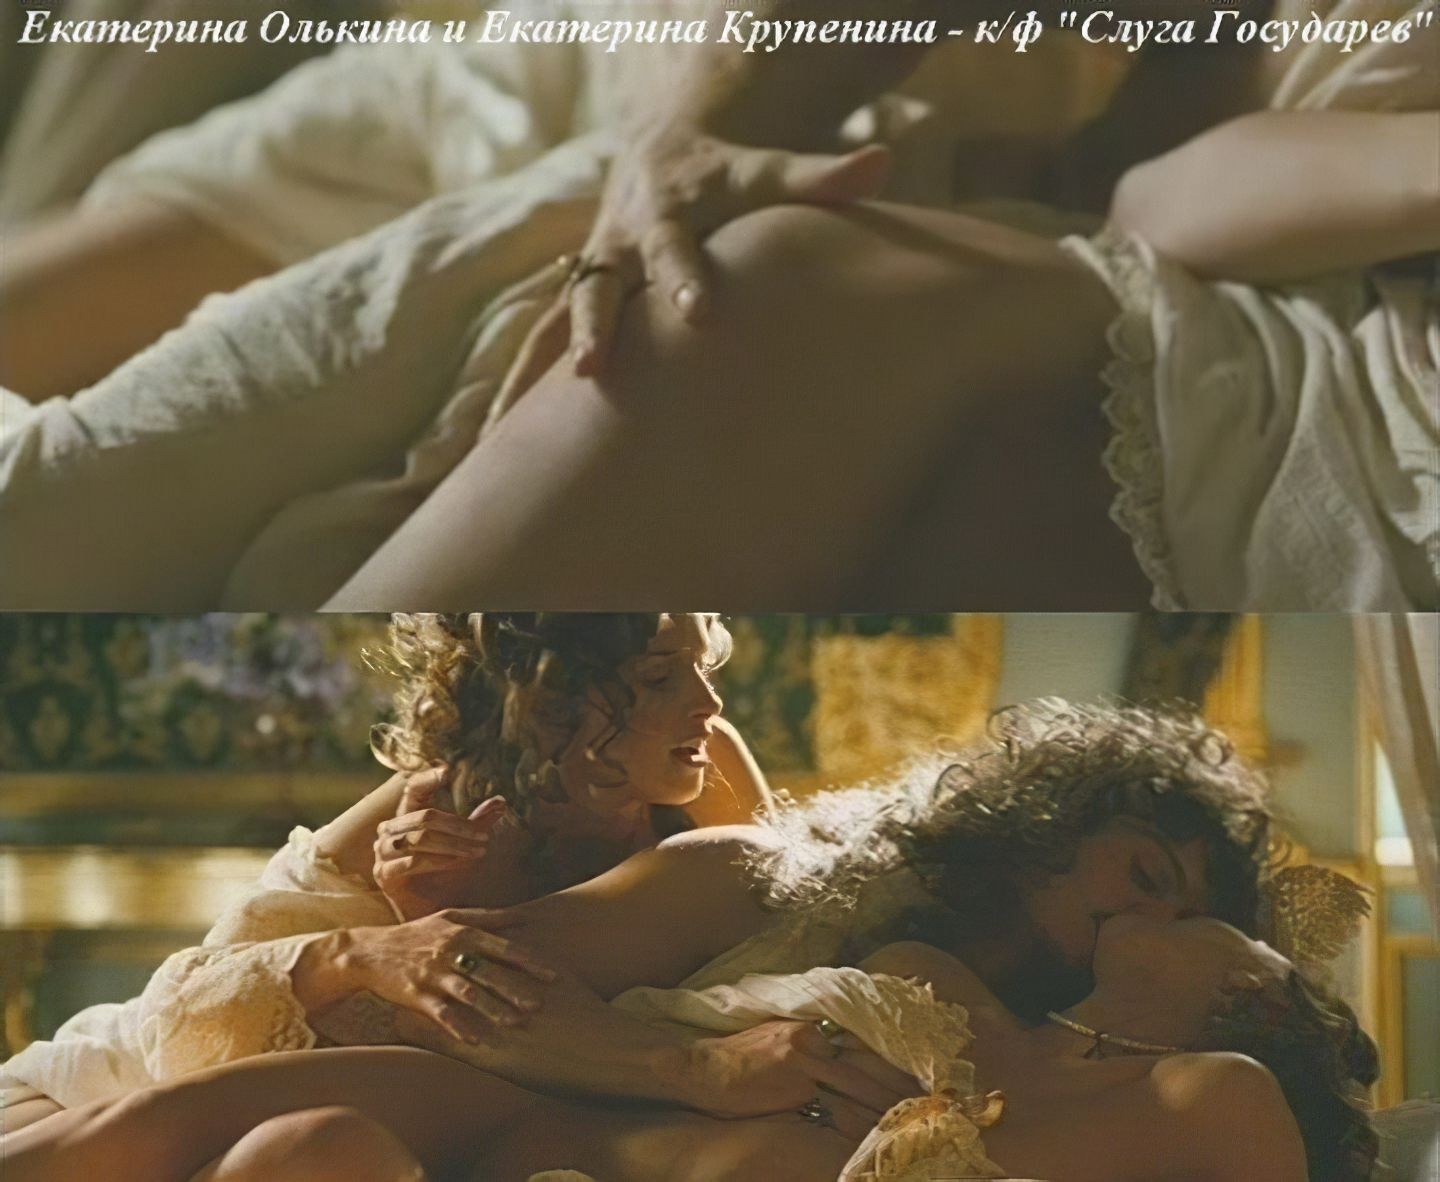 Сексуальная актриса Екатерина Крупенина и ее не менее сексуальные фотографии